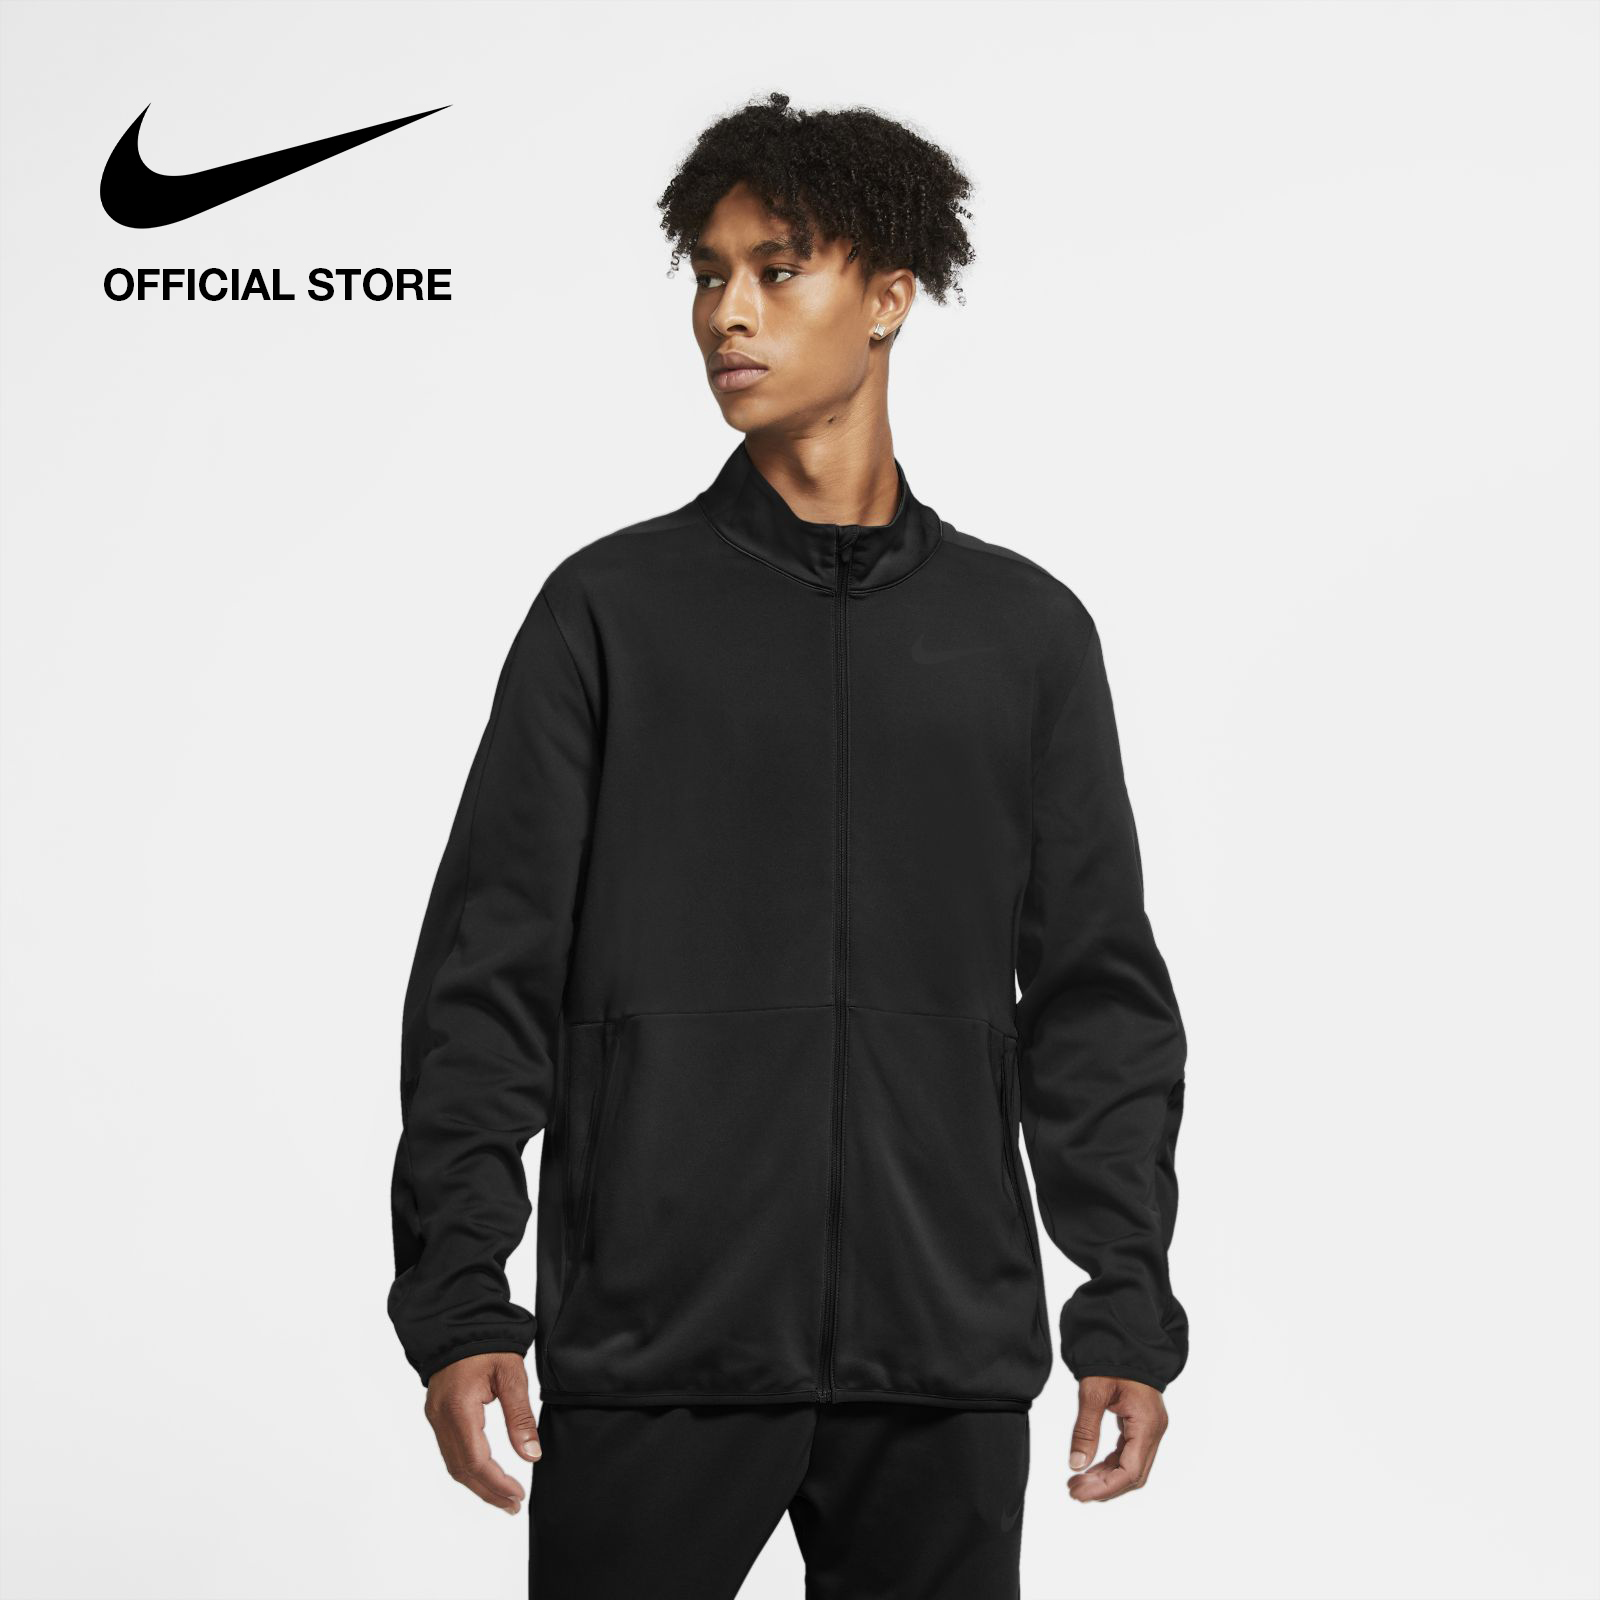 Nike Men's Epic Knit Jacket - Black ไนกี้ เสื้อแจ็คเก็ตผู้ชาย - สีดำ